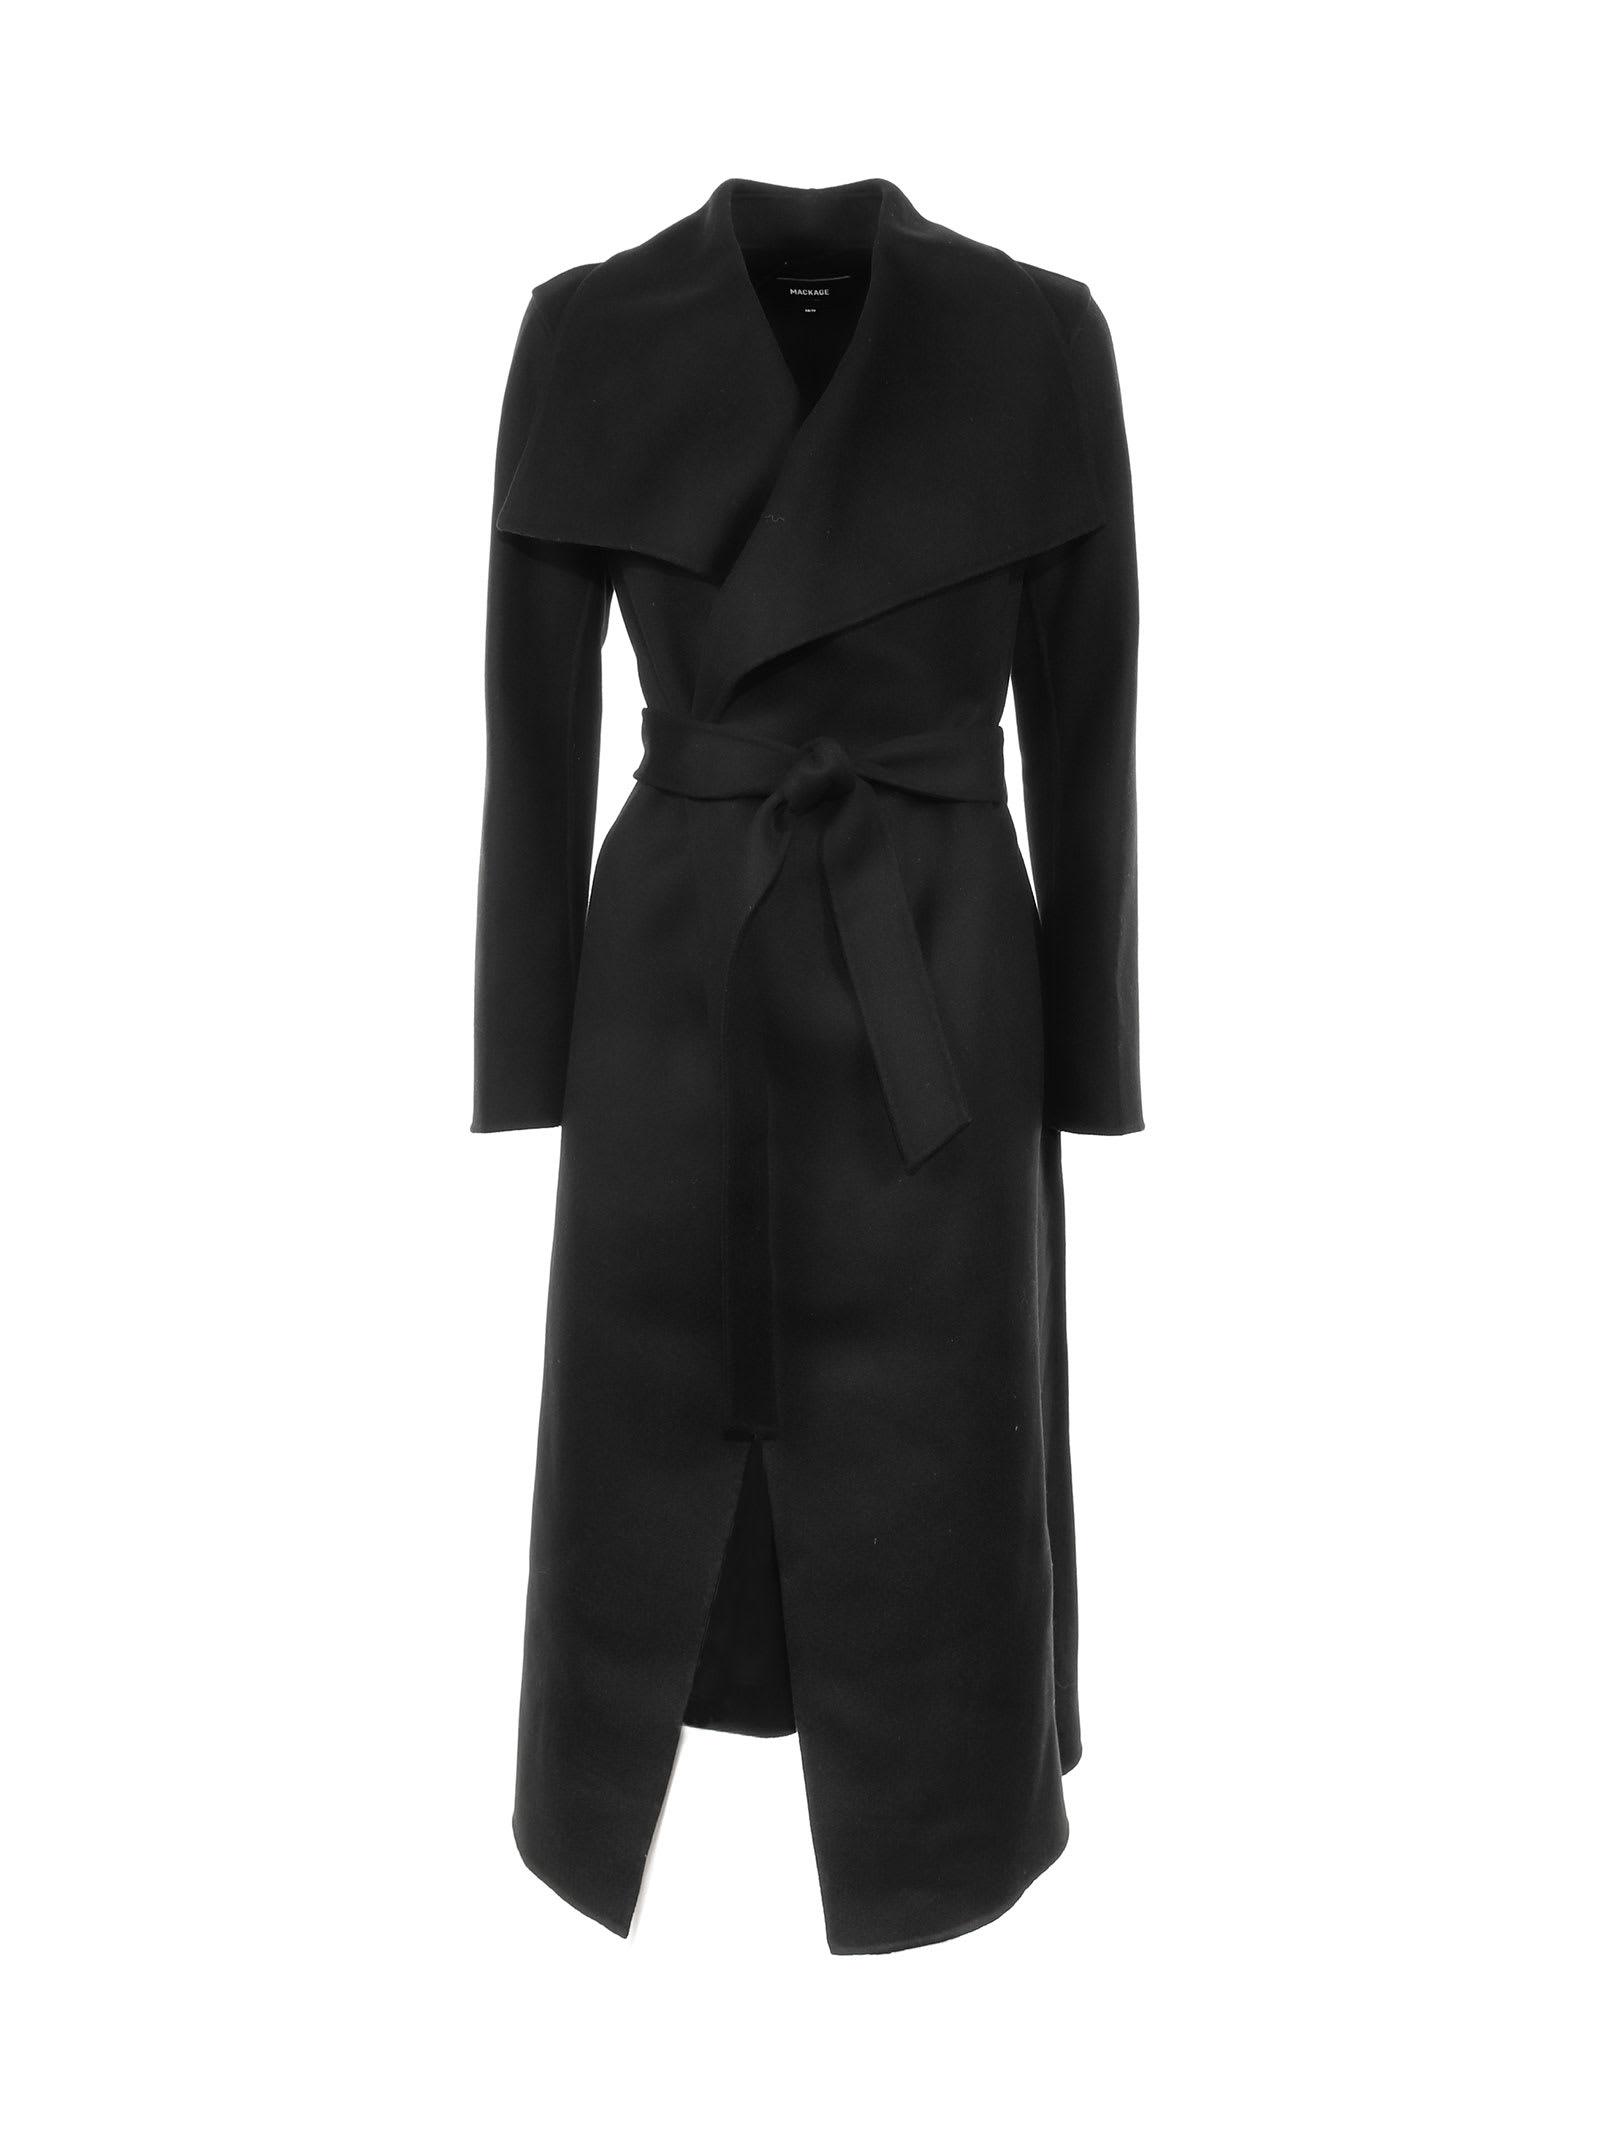 Mackage Mai Wool Coat in Nero (Black) | Lyst